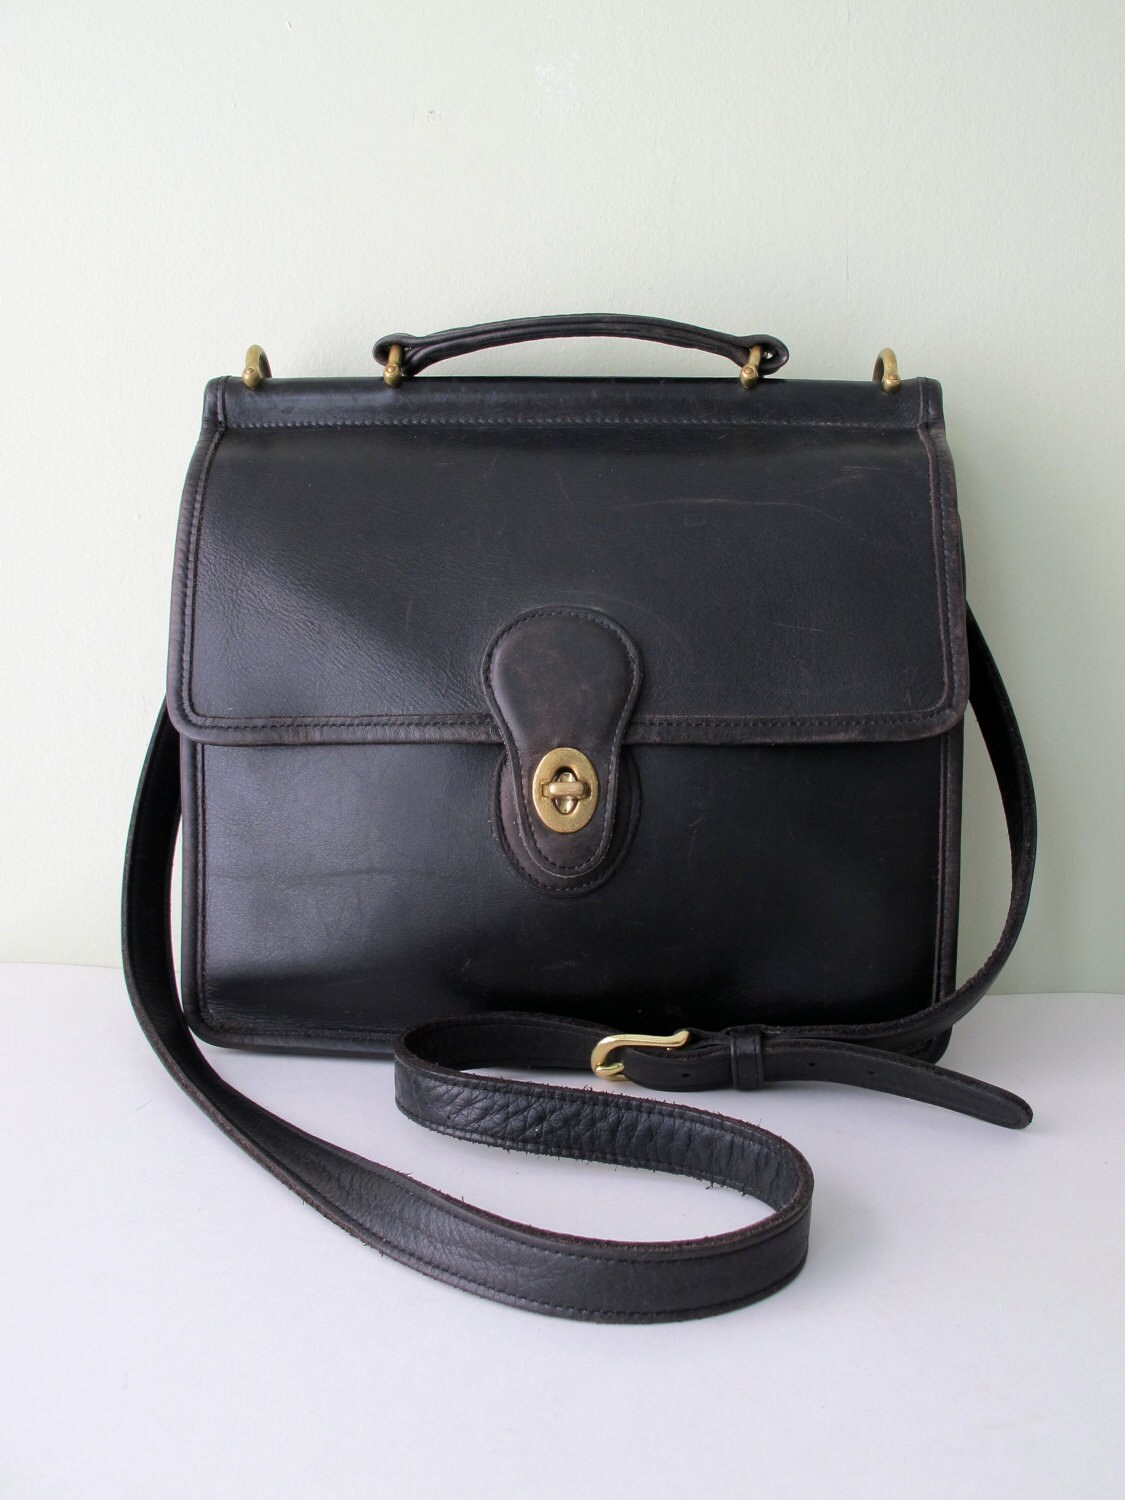 Vintage COACH Willis Bag in Black 9927 by magnoliavintageco